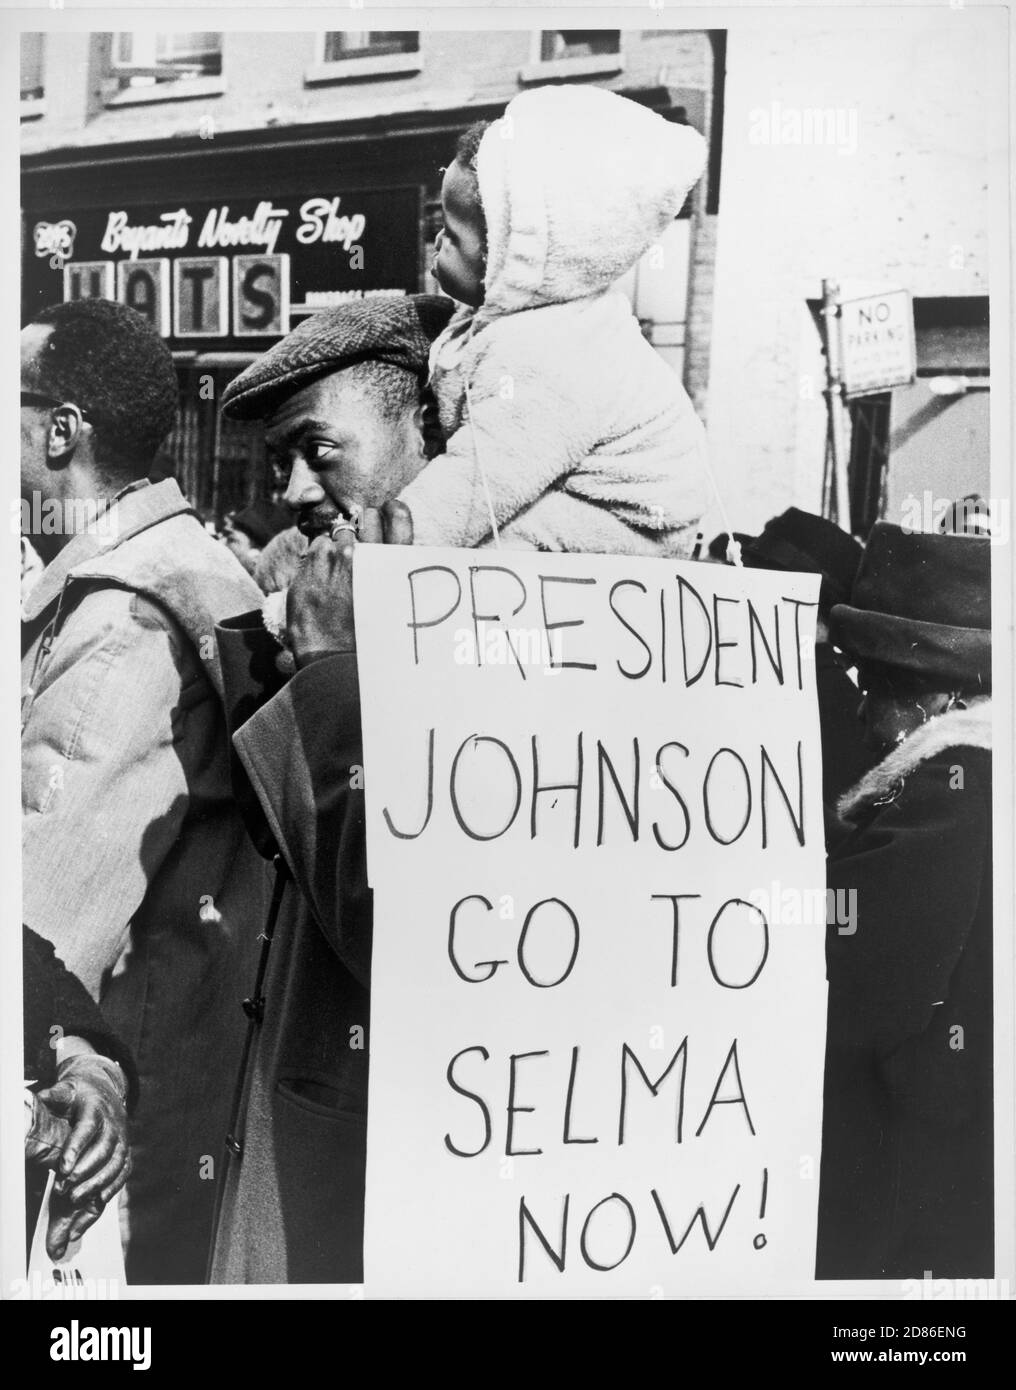 Un homme afro-américain tient un enfant sur ses épaules alors qu'il porte un panneau indiquant au président Lyndon Johnson de « aller à Selma Now », New York, NY, 3/1965. (Photo de Stanley Wolfson/New York World-Telegram et The Sun Newspaper Photograph Collection/RBM Vintage Images) Banque D'Images